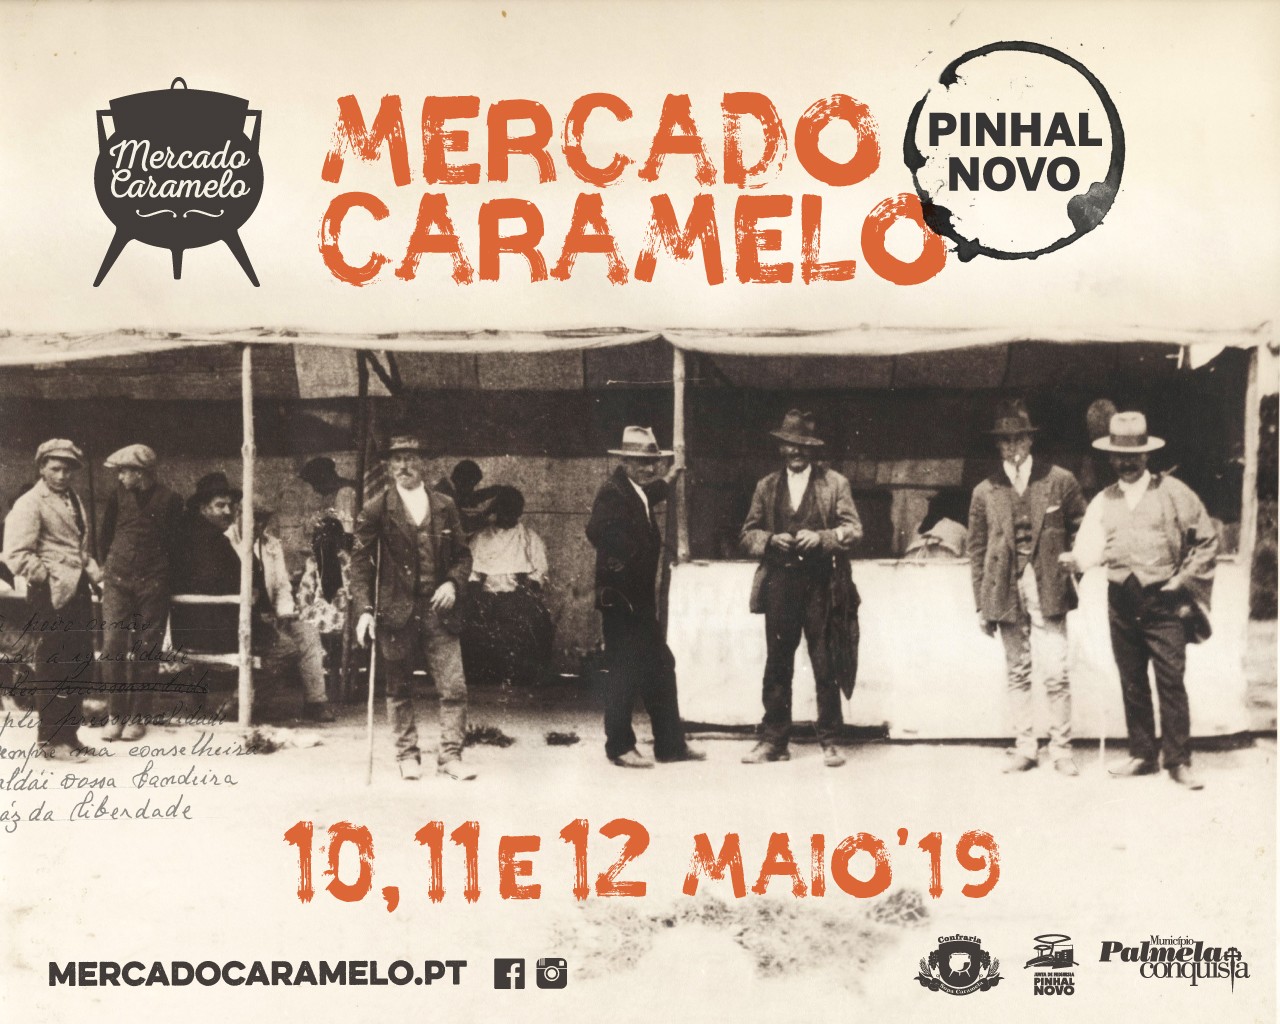 MERCADO CARAMELO DE PINHAL NOVO 